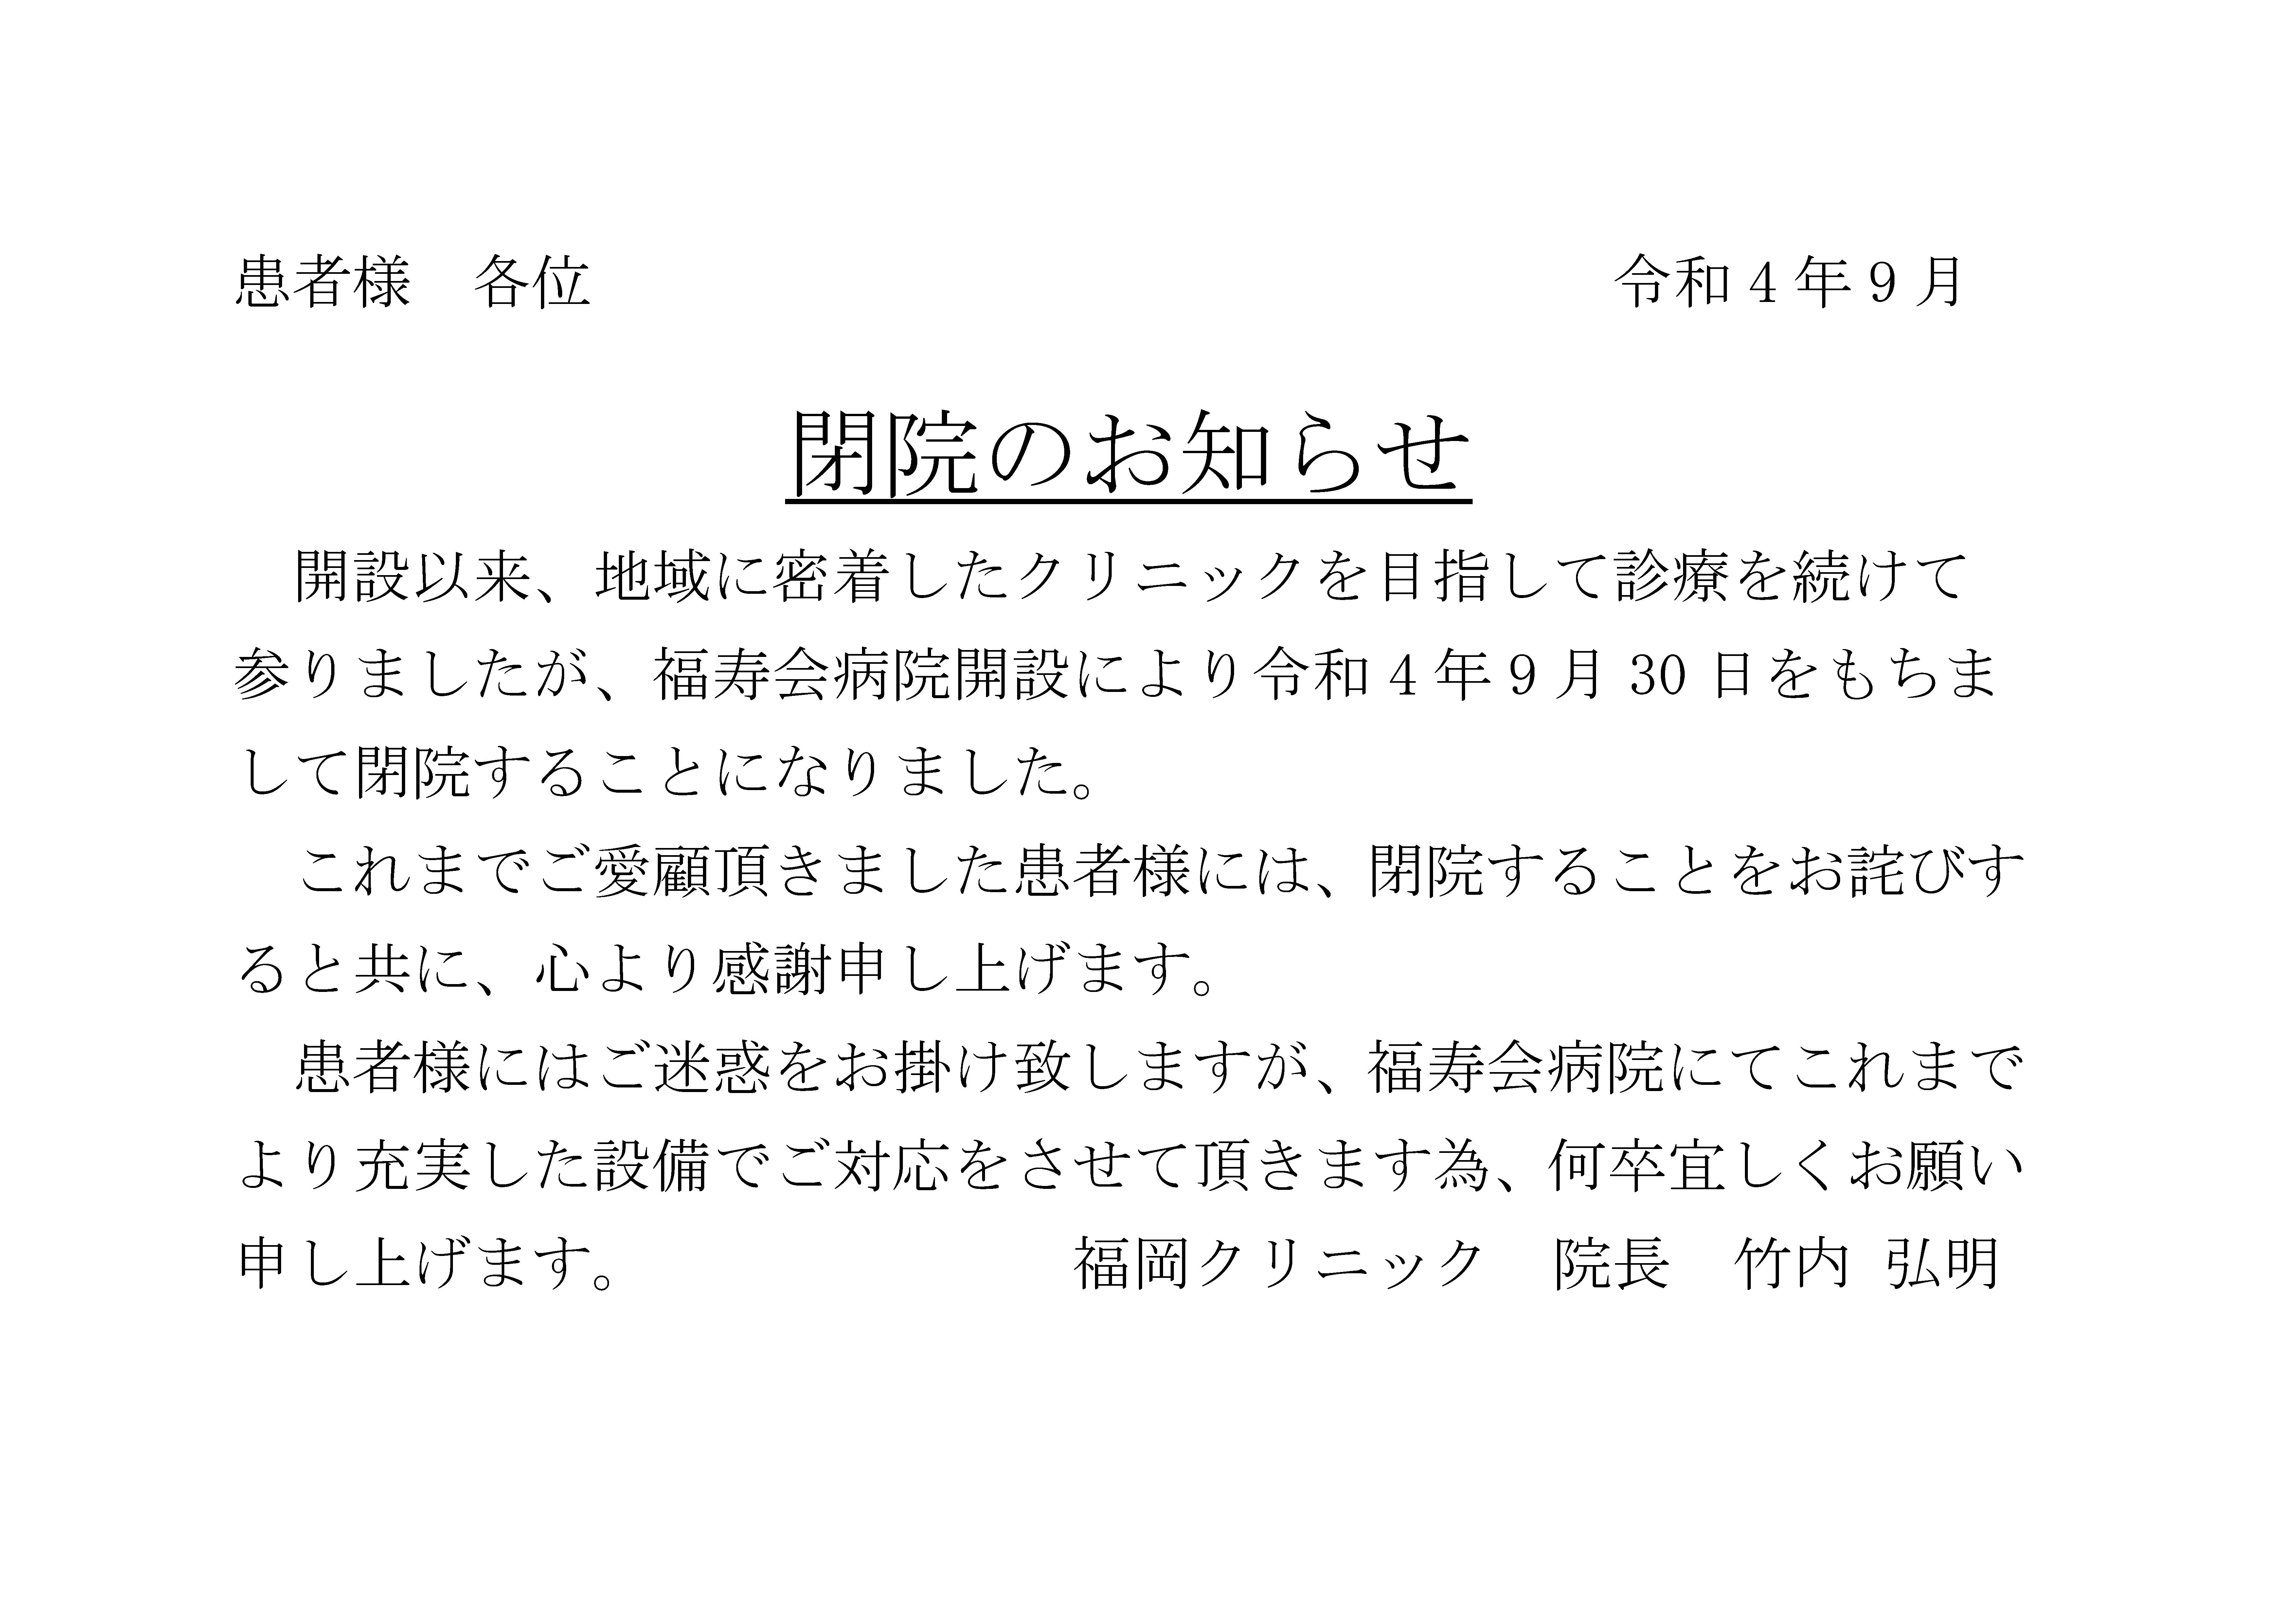 【福岡クリニック】閉院のお知らせ